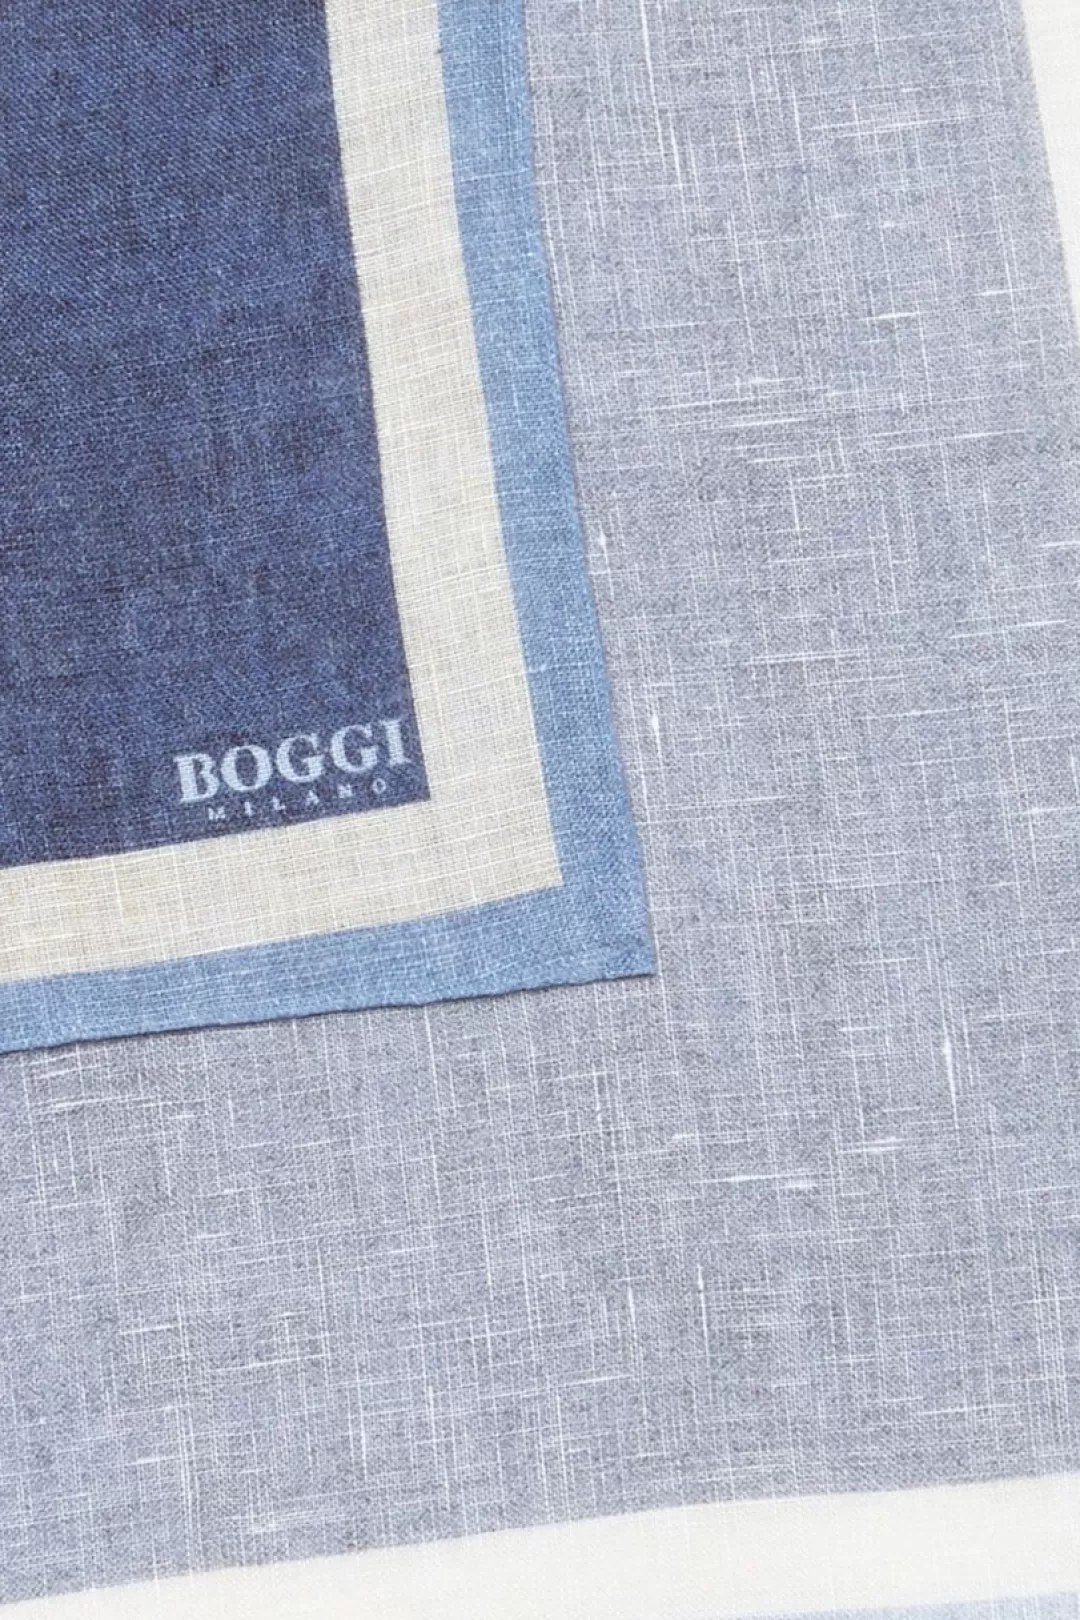 Boggi Pochette Motivo Cornice In Lino Blu Store